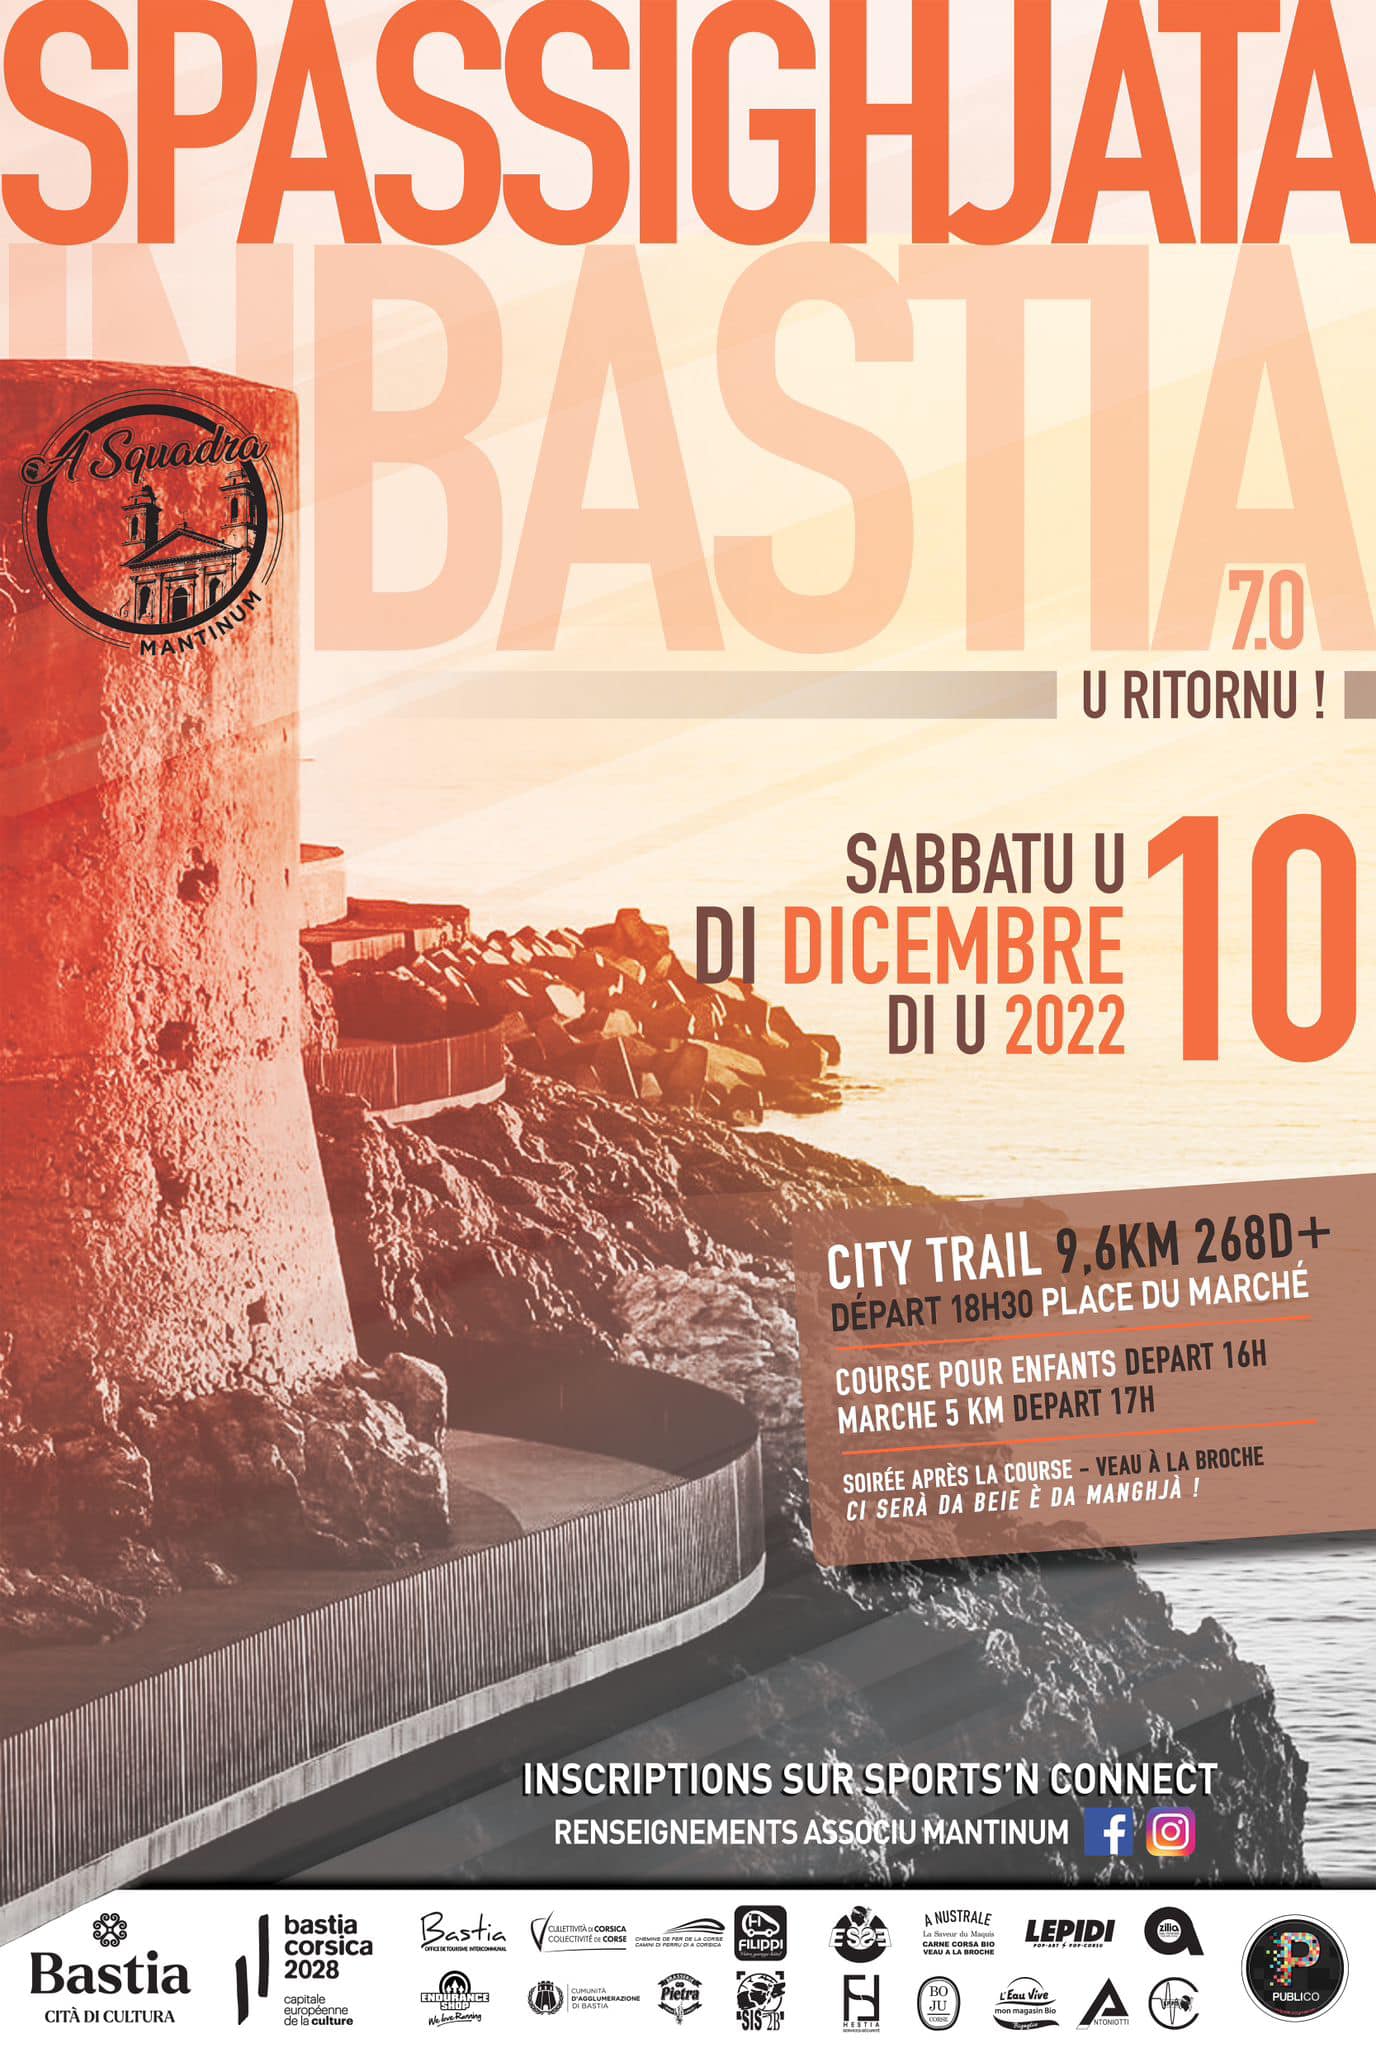 Bastia : La Spassighjata fait son grand retour le 10 décembre